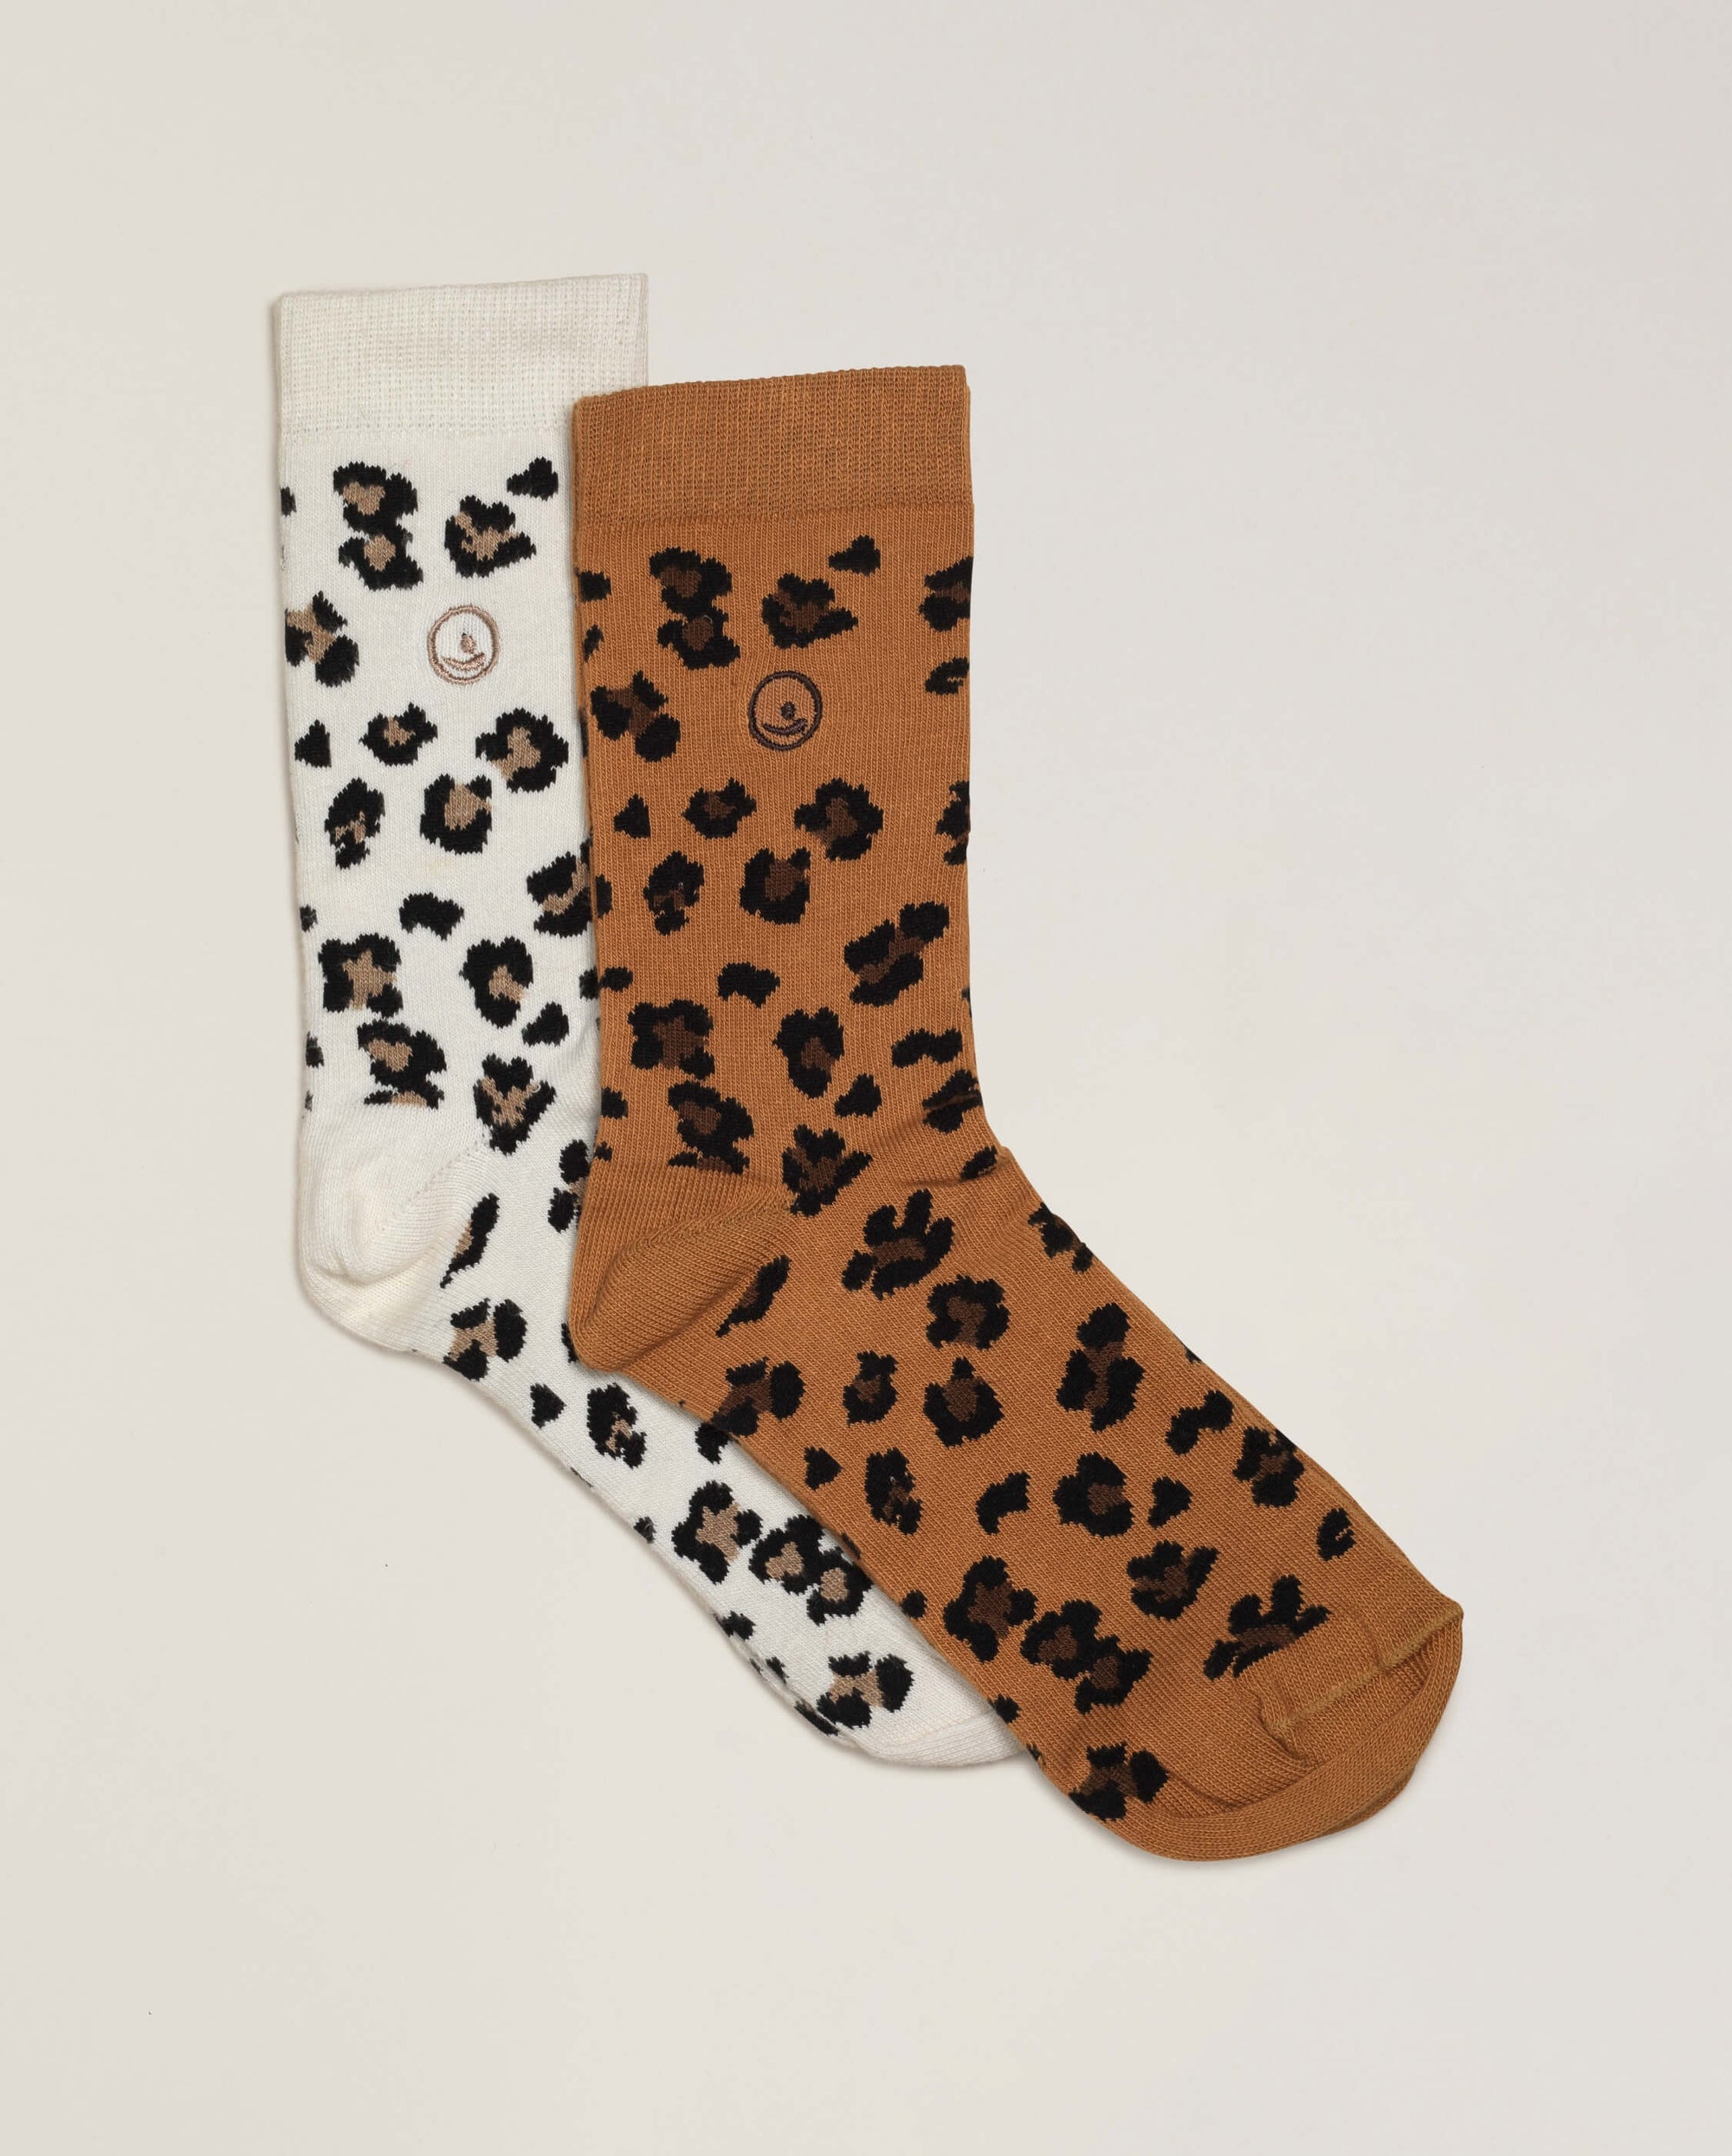 Pack 2 paires chaussettes femme léopard, camel-blanc Angarde packshot plat